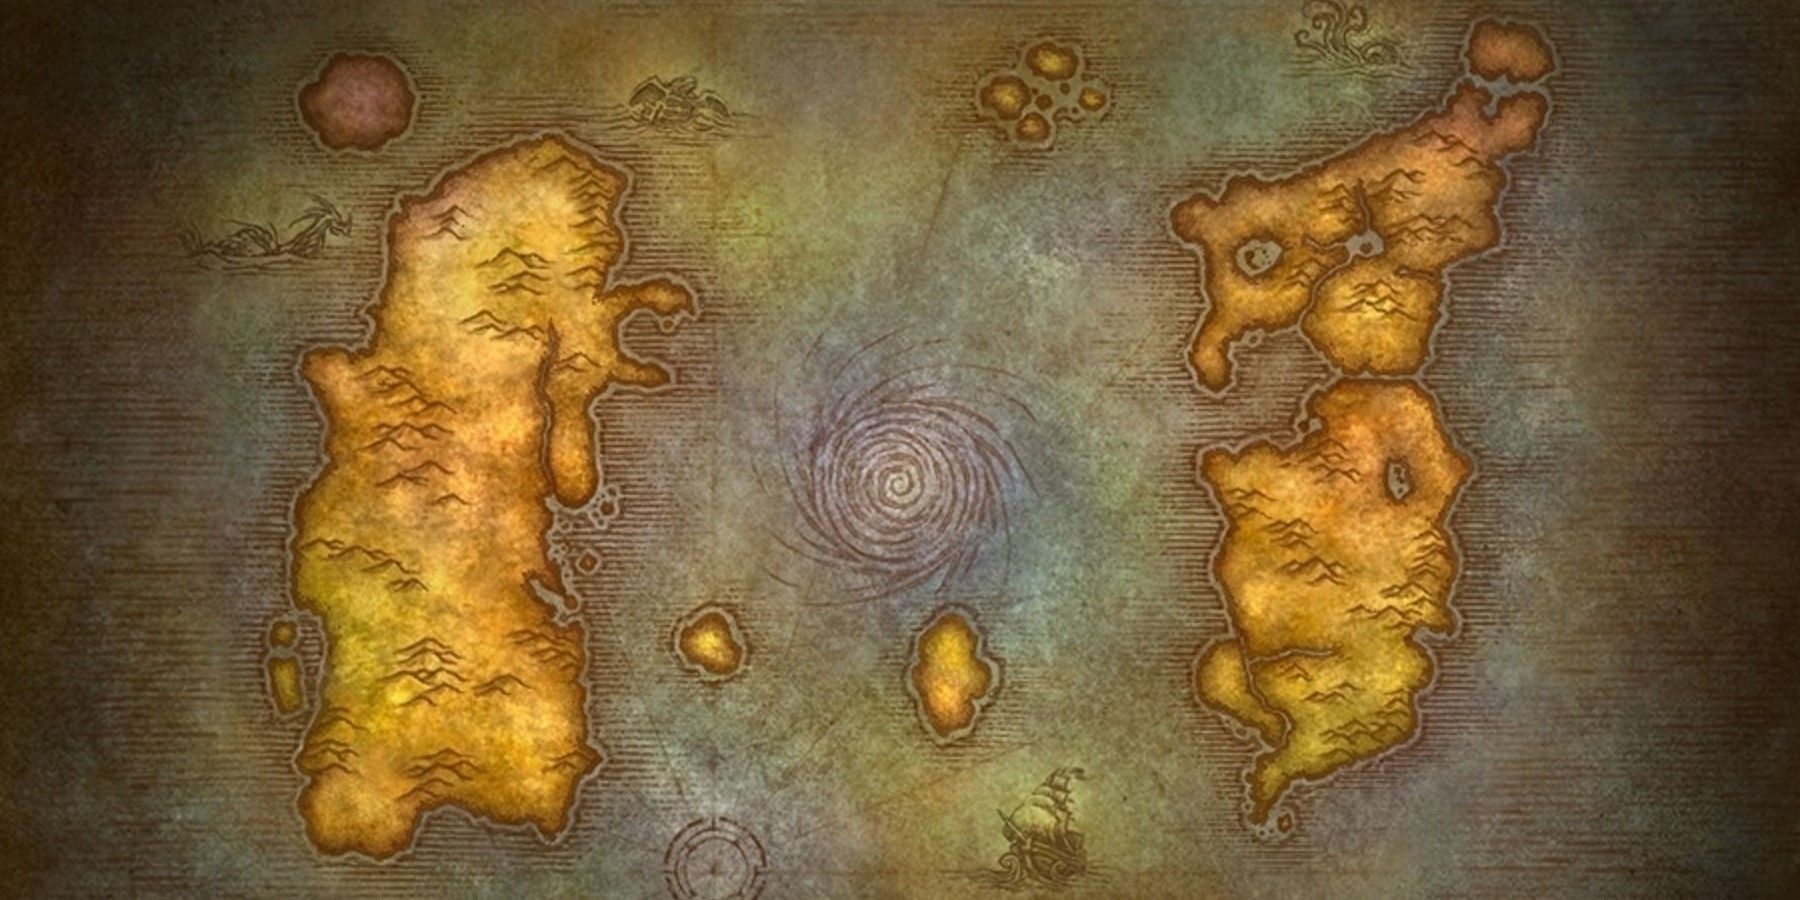 Pemain World of Warcraft mencipta peta negara -negara Eropah dalam gaya WOW Classic